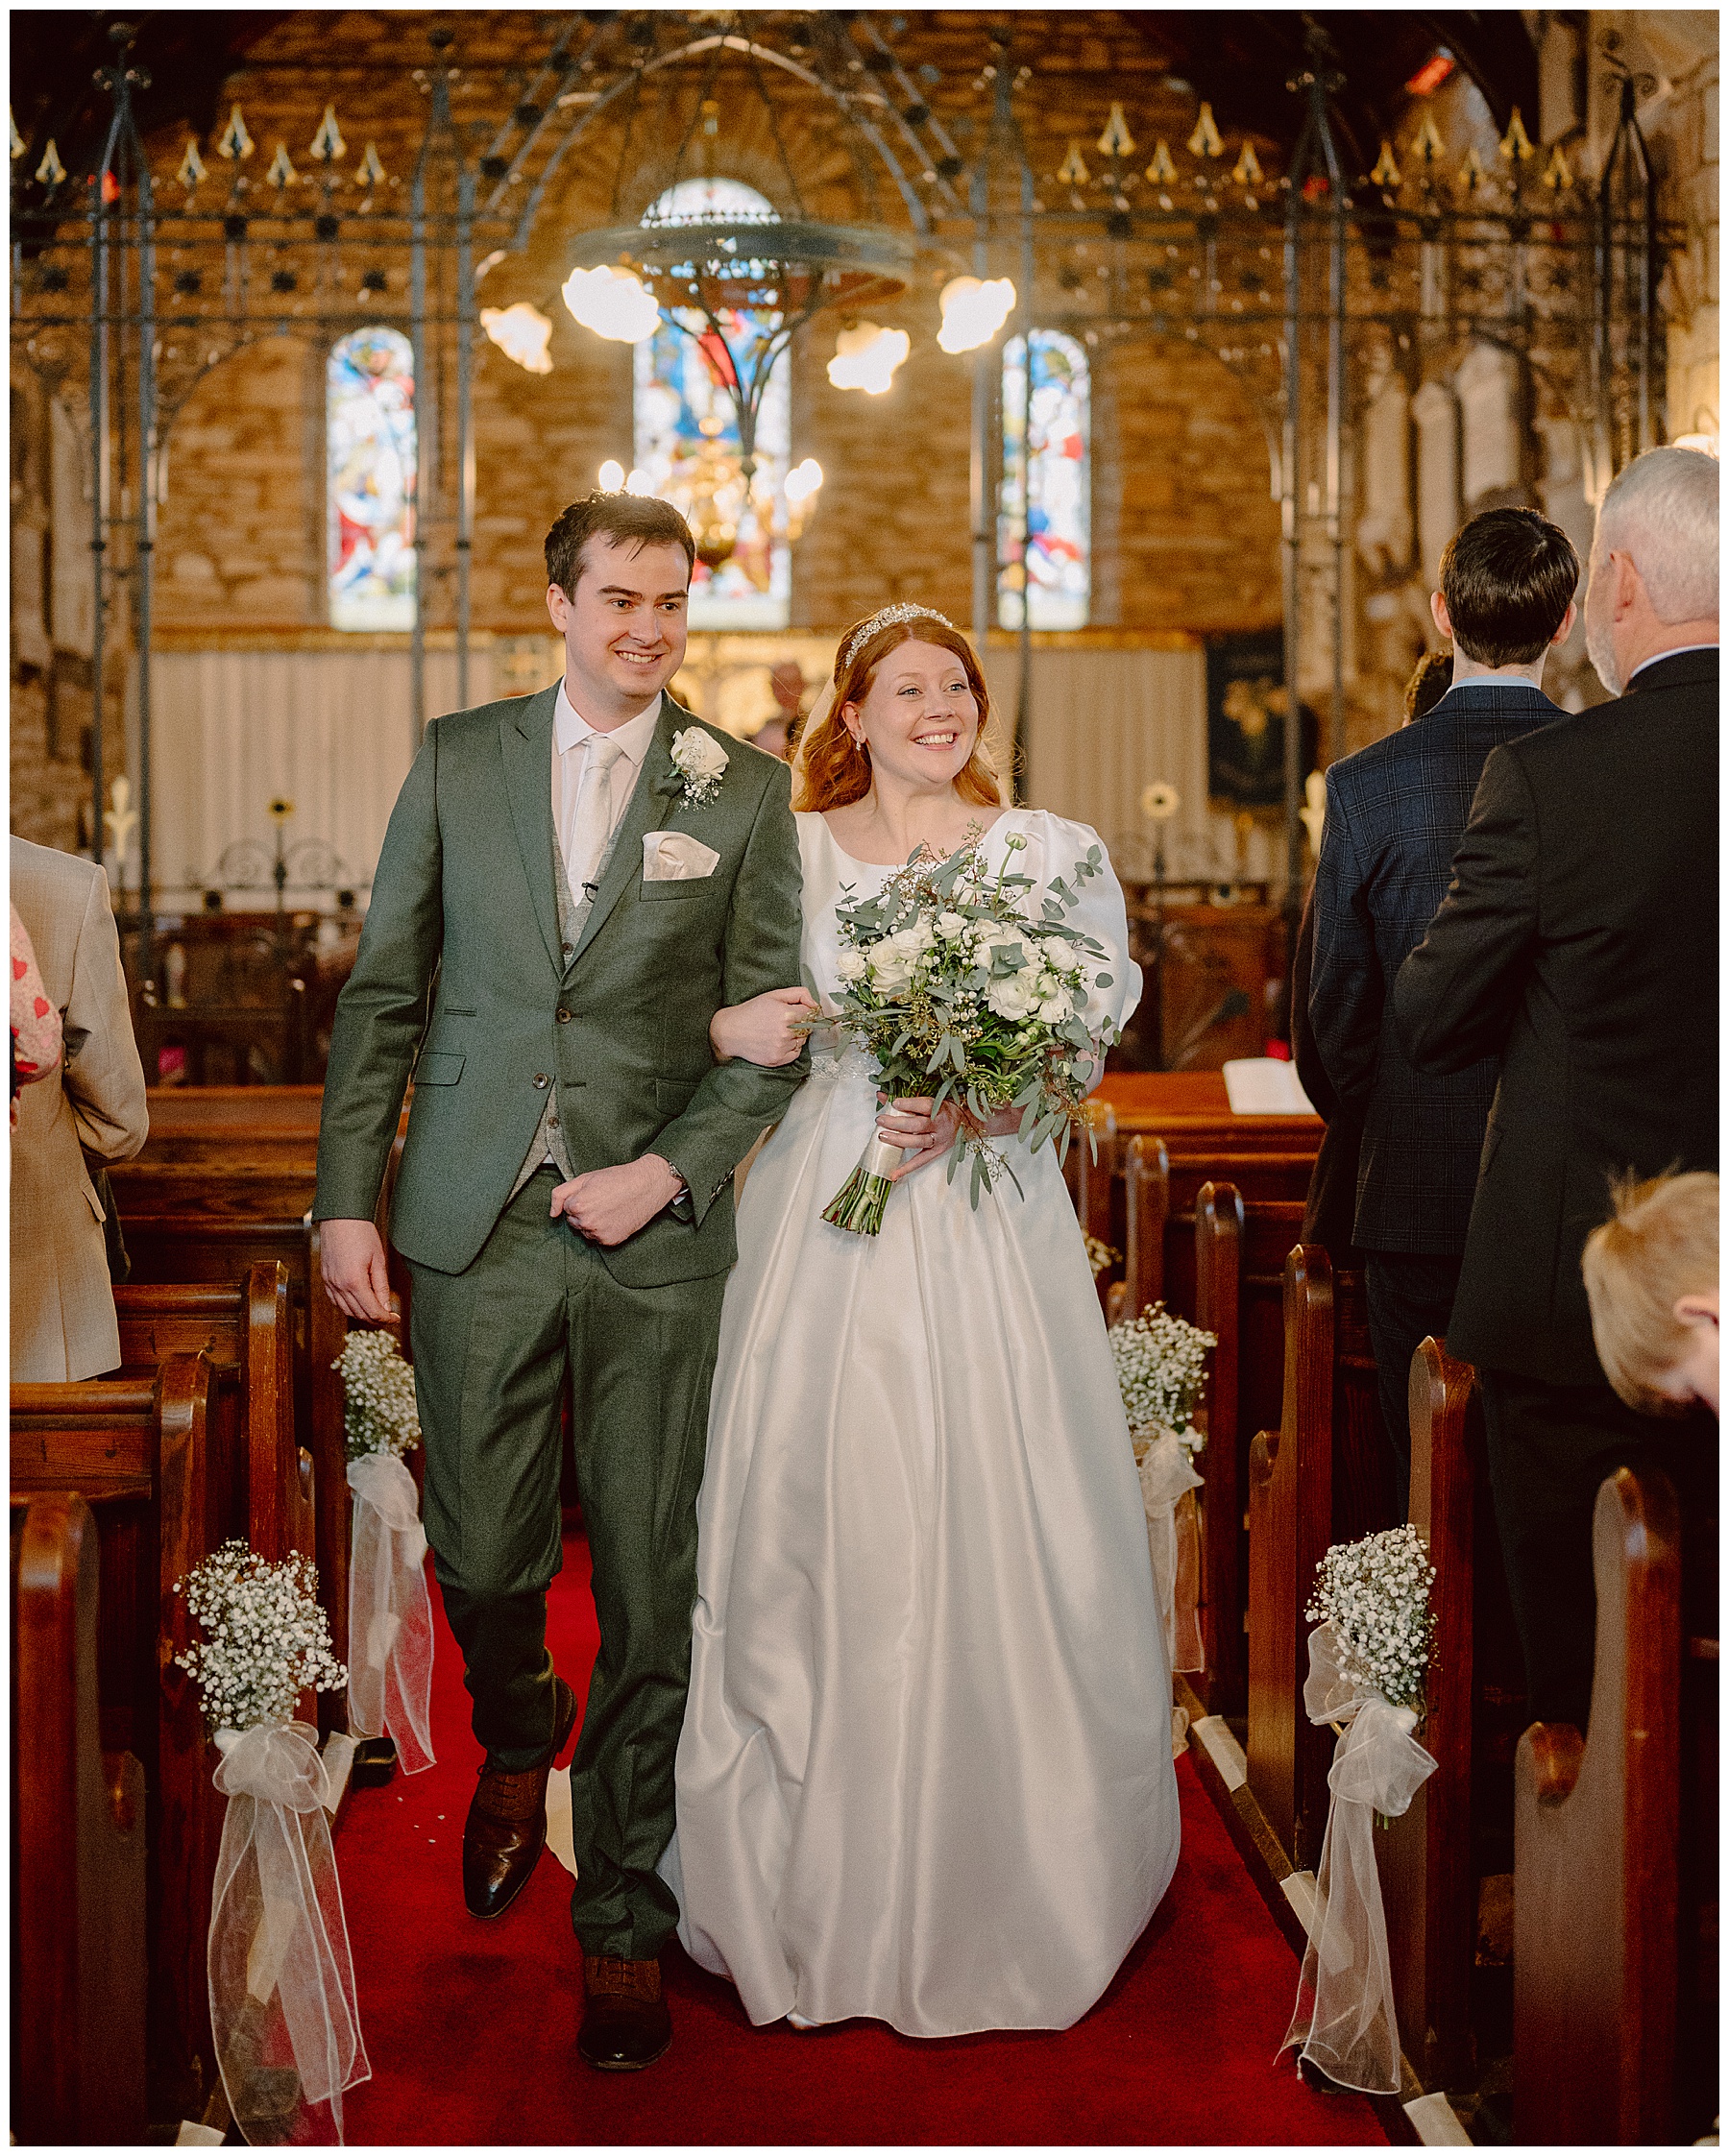 Wedding Service at St Cynidr's Church Glasbury